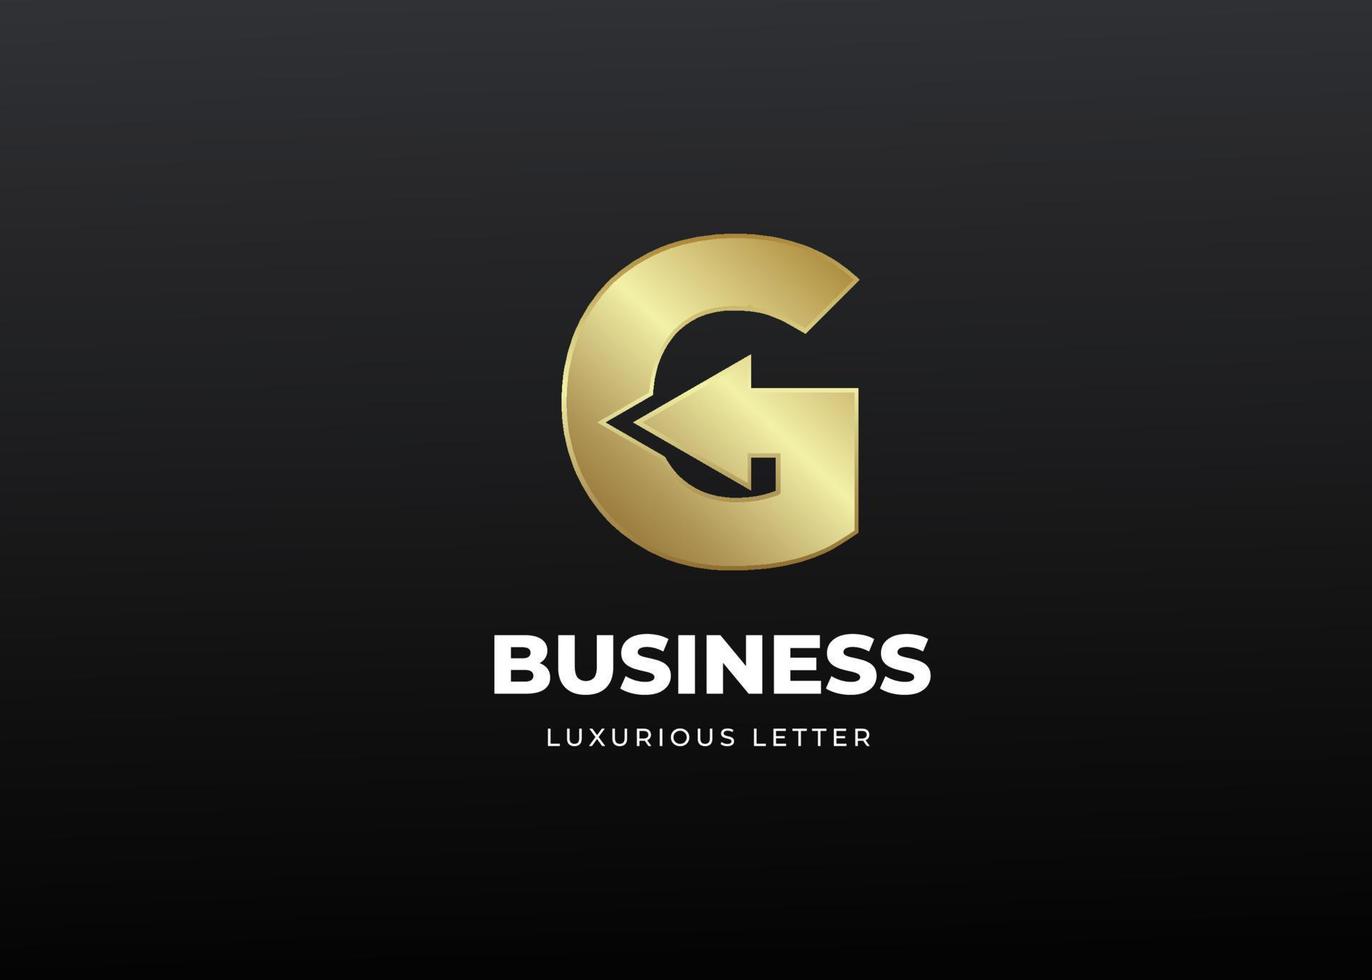 första bokstaven g logotyp design med lyxigt guld gradient koncept vektor